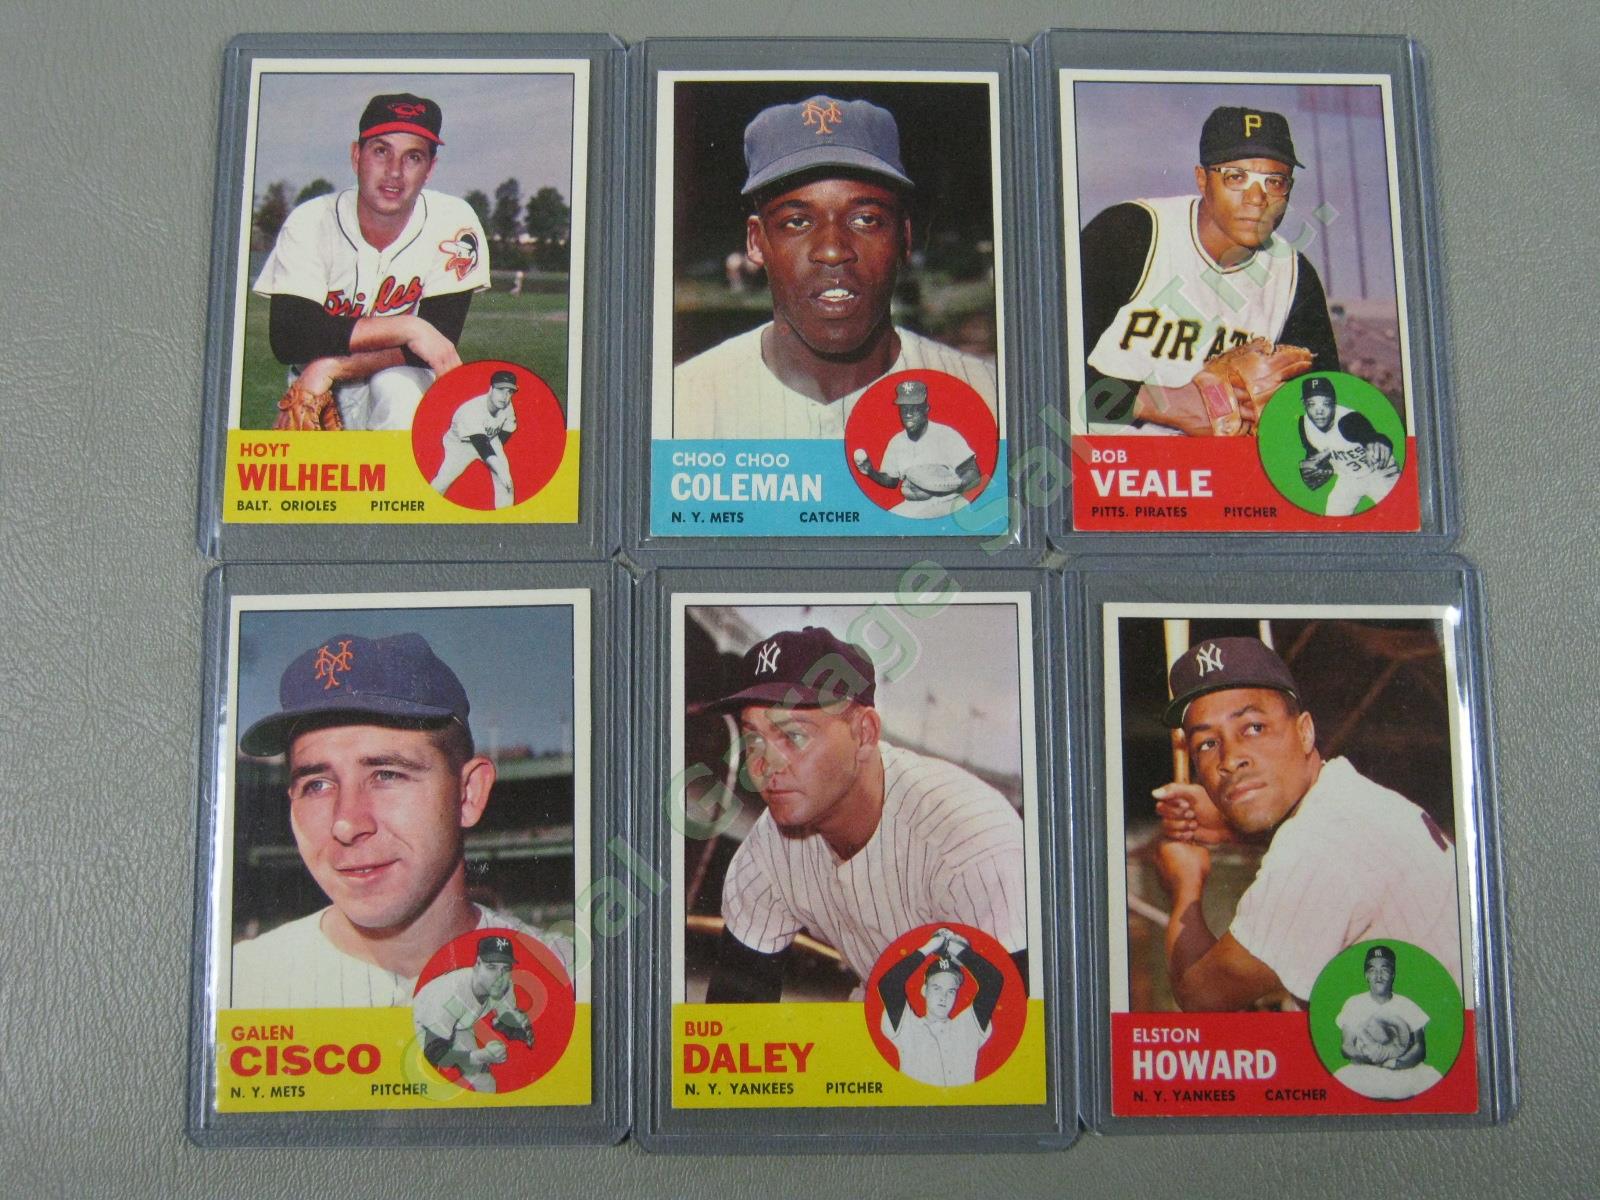 160 Vtg 1961 1962 1963 Topps Baseball Card Lot w/ RBI Home Run Leaders + VG-EX 19